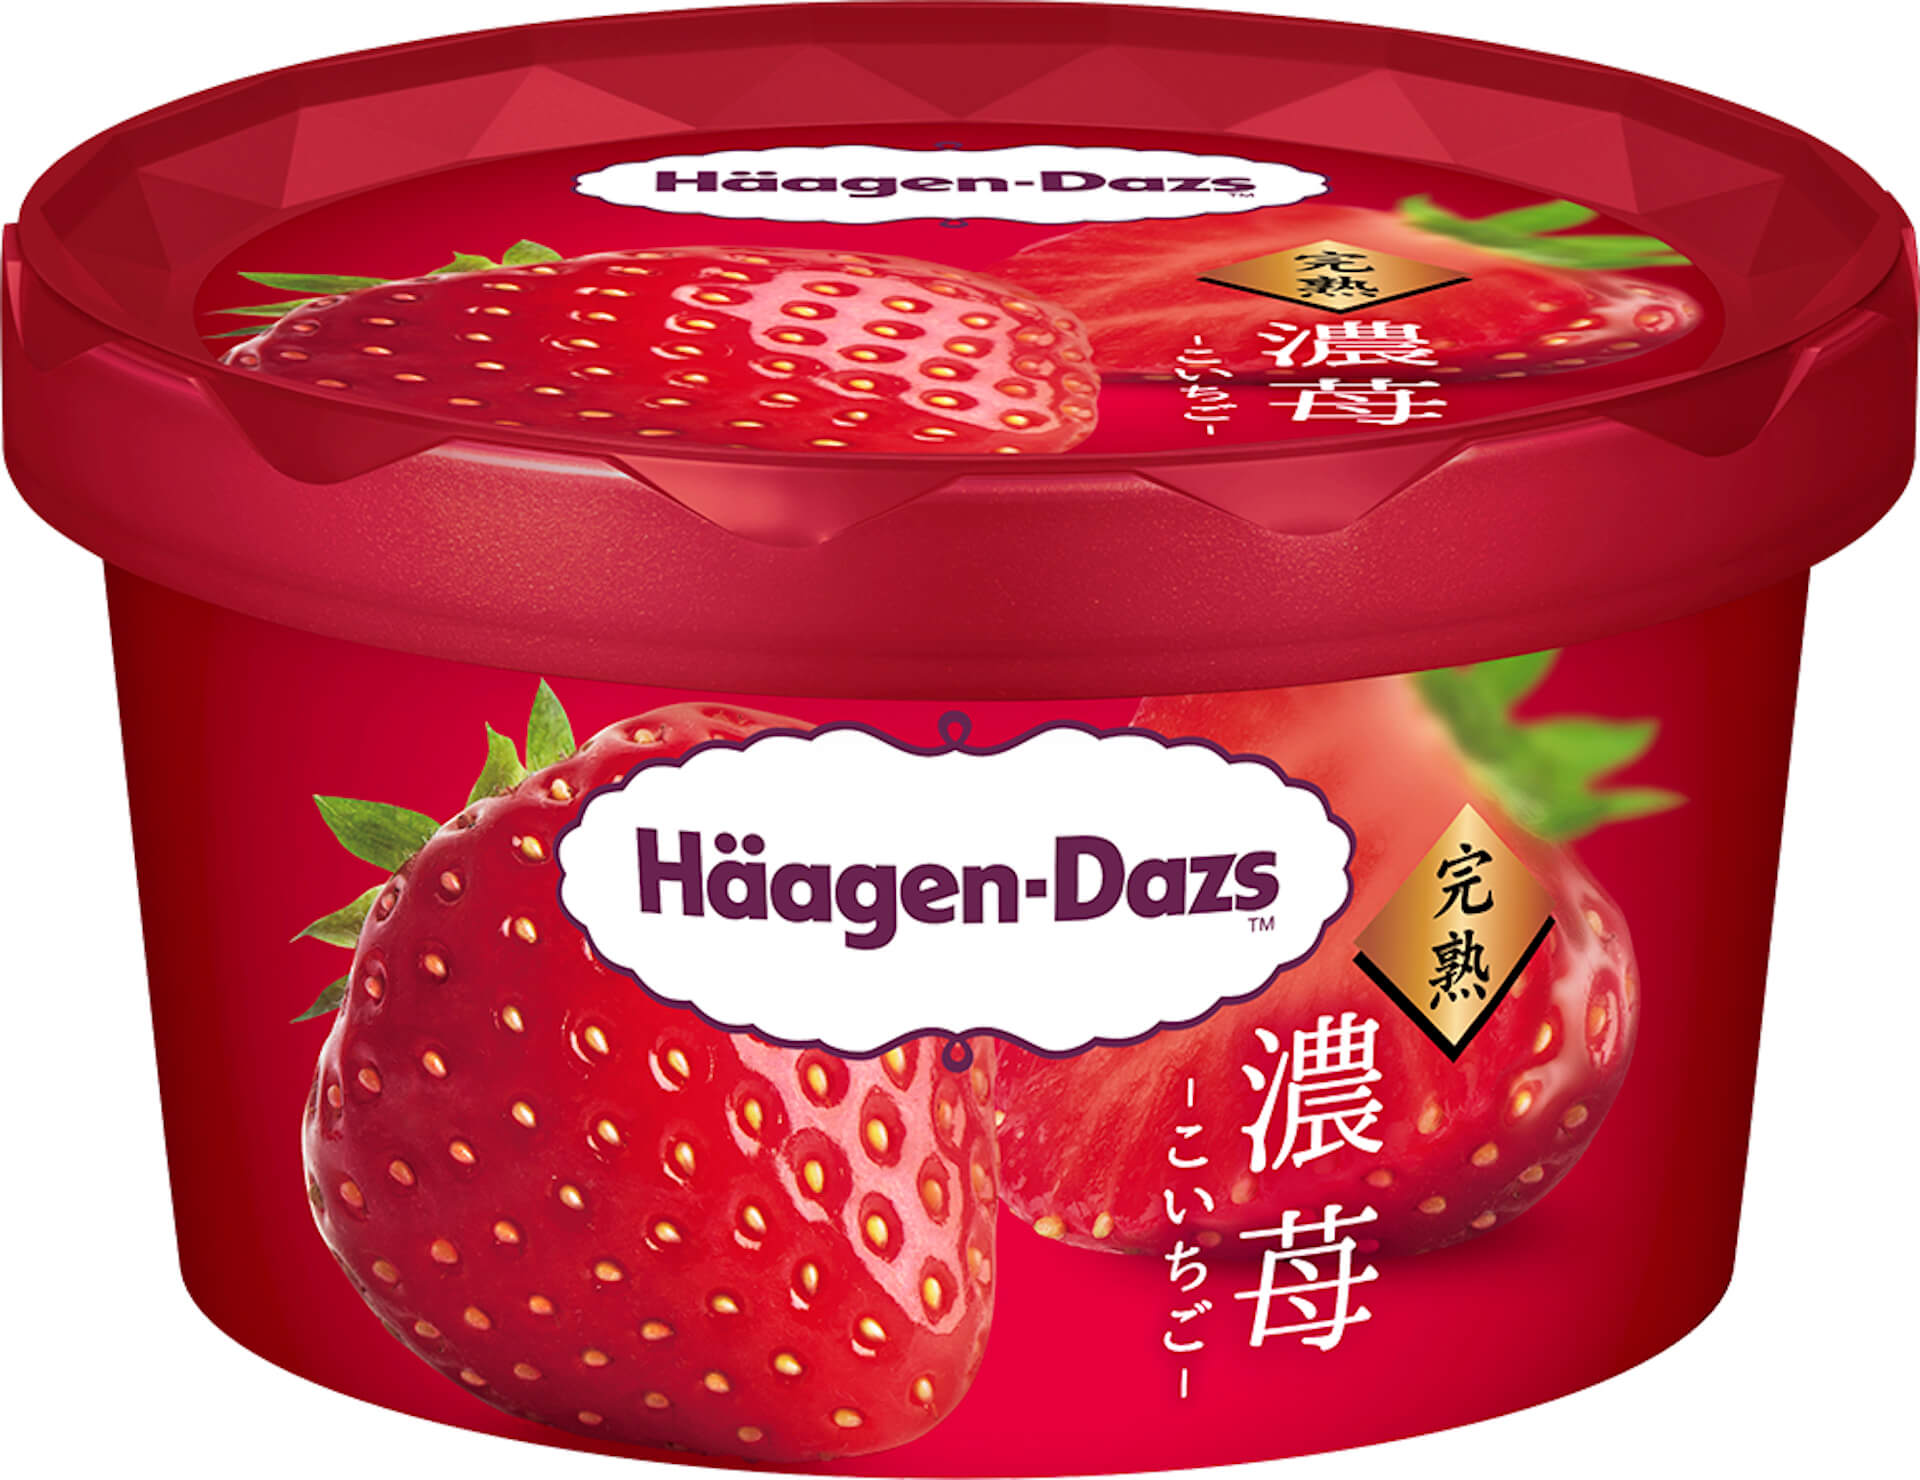 ハーゲンダッツから超濃厚ないちごの美味しさを凝縮したアイスクリーム『濃苺』が新発売！ gourmet210726_haagendazs_koichigo_2